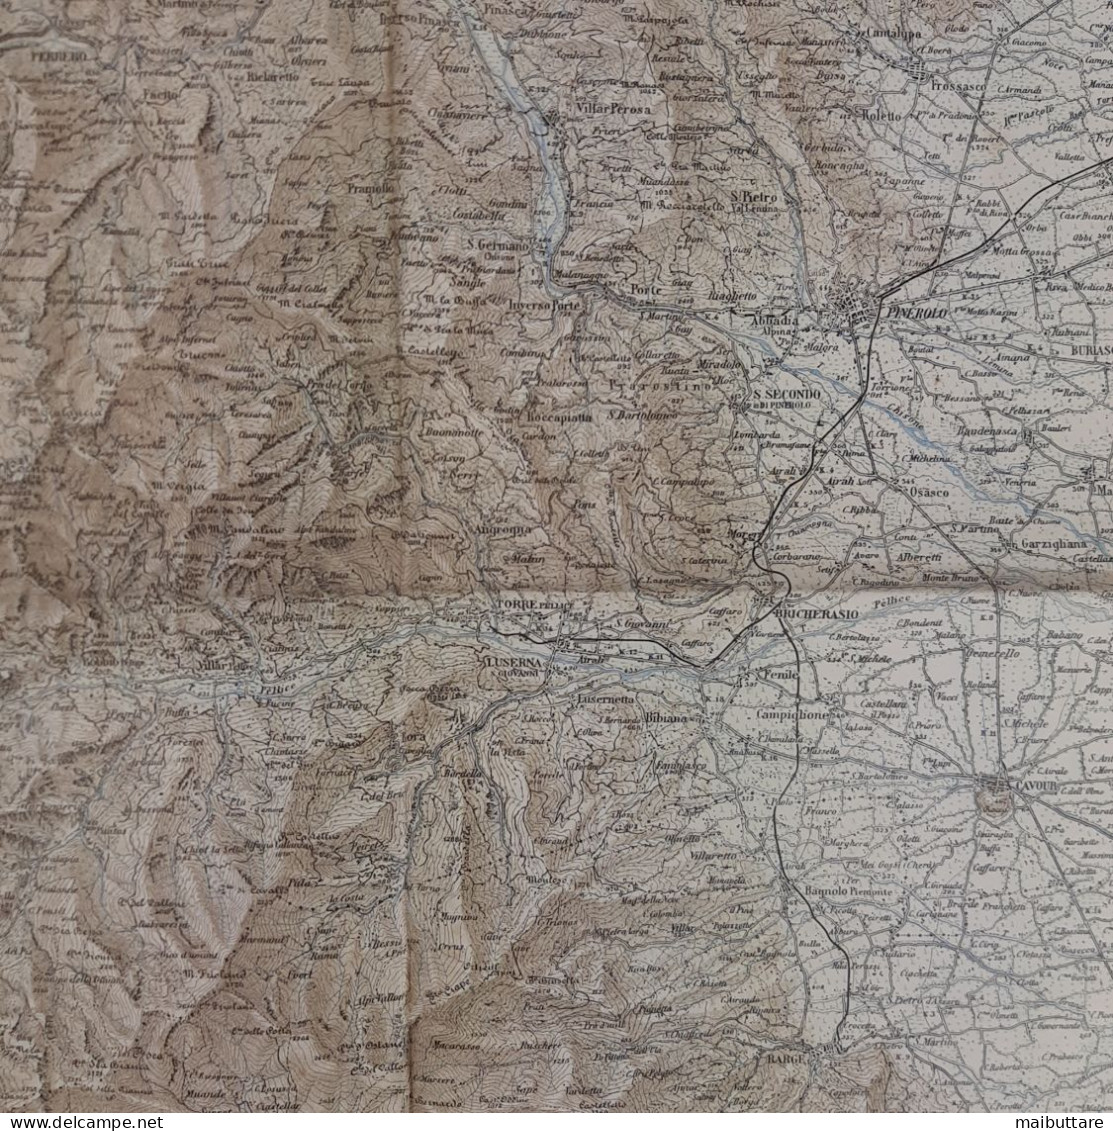 Carta Geografica, Cartina Mappa Militare Pinerolo Torino Piemonte F67 Della Carta D'Italia Scala 1:100.000 - Geographical Maps